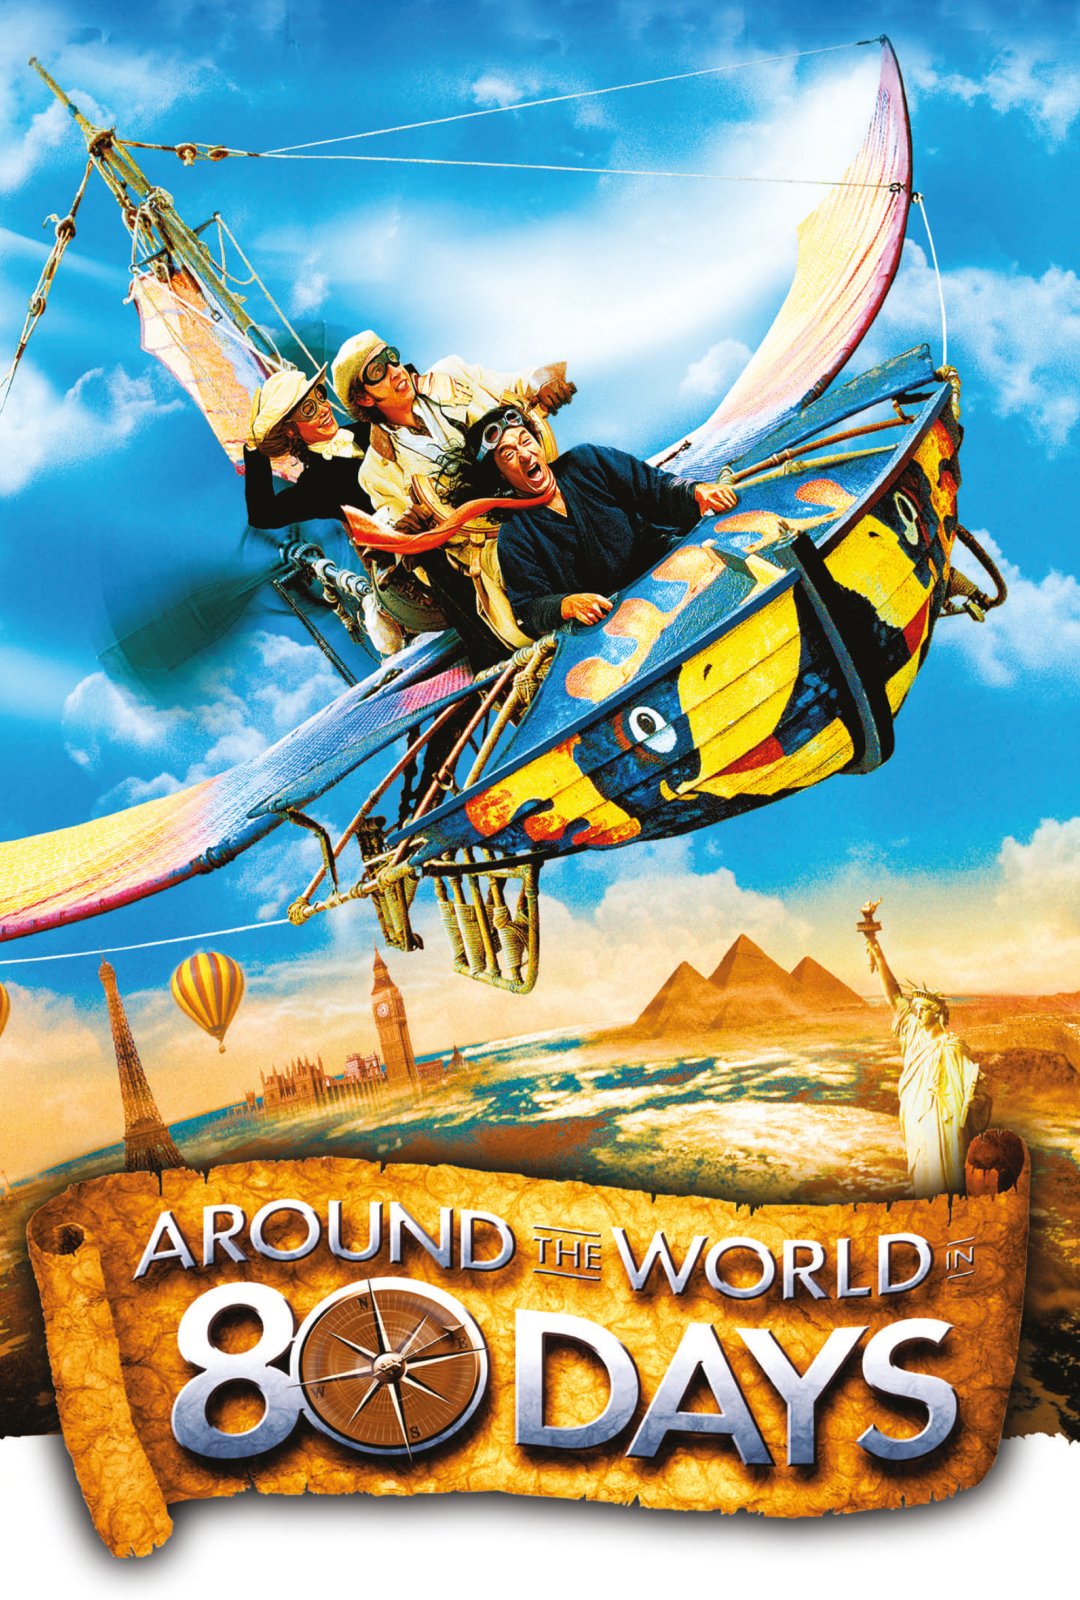 Around The World In 80 Days (2004)